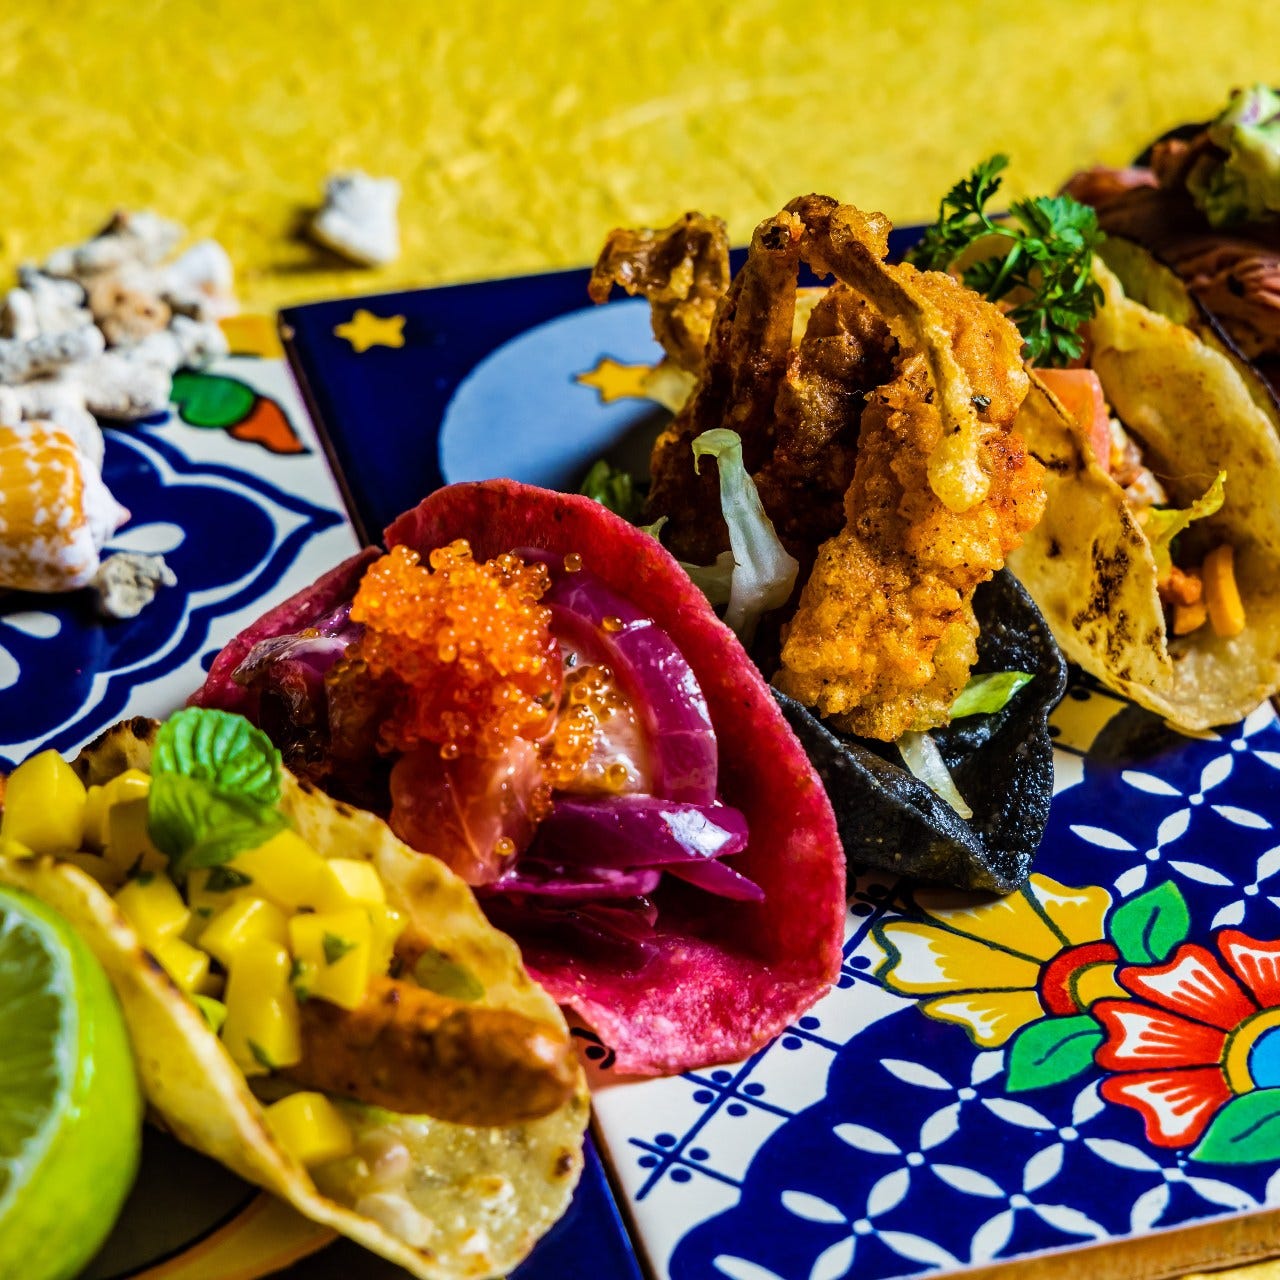 沖縄の県産食材をメキシカンの調理法で表現